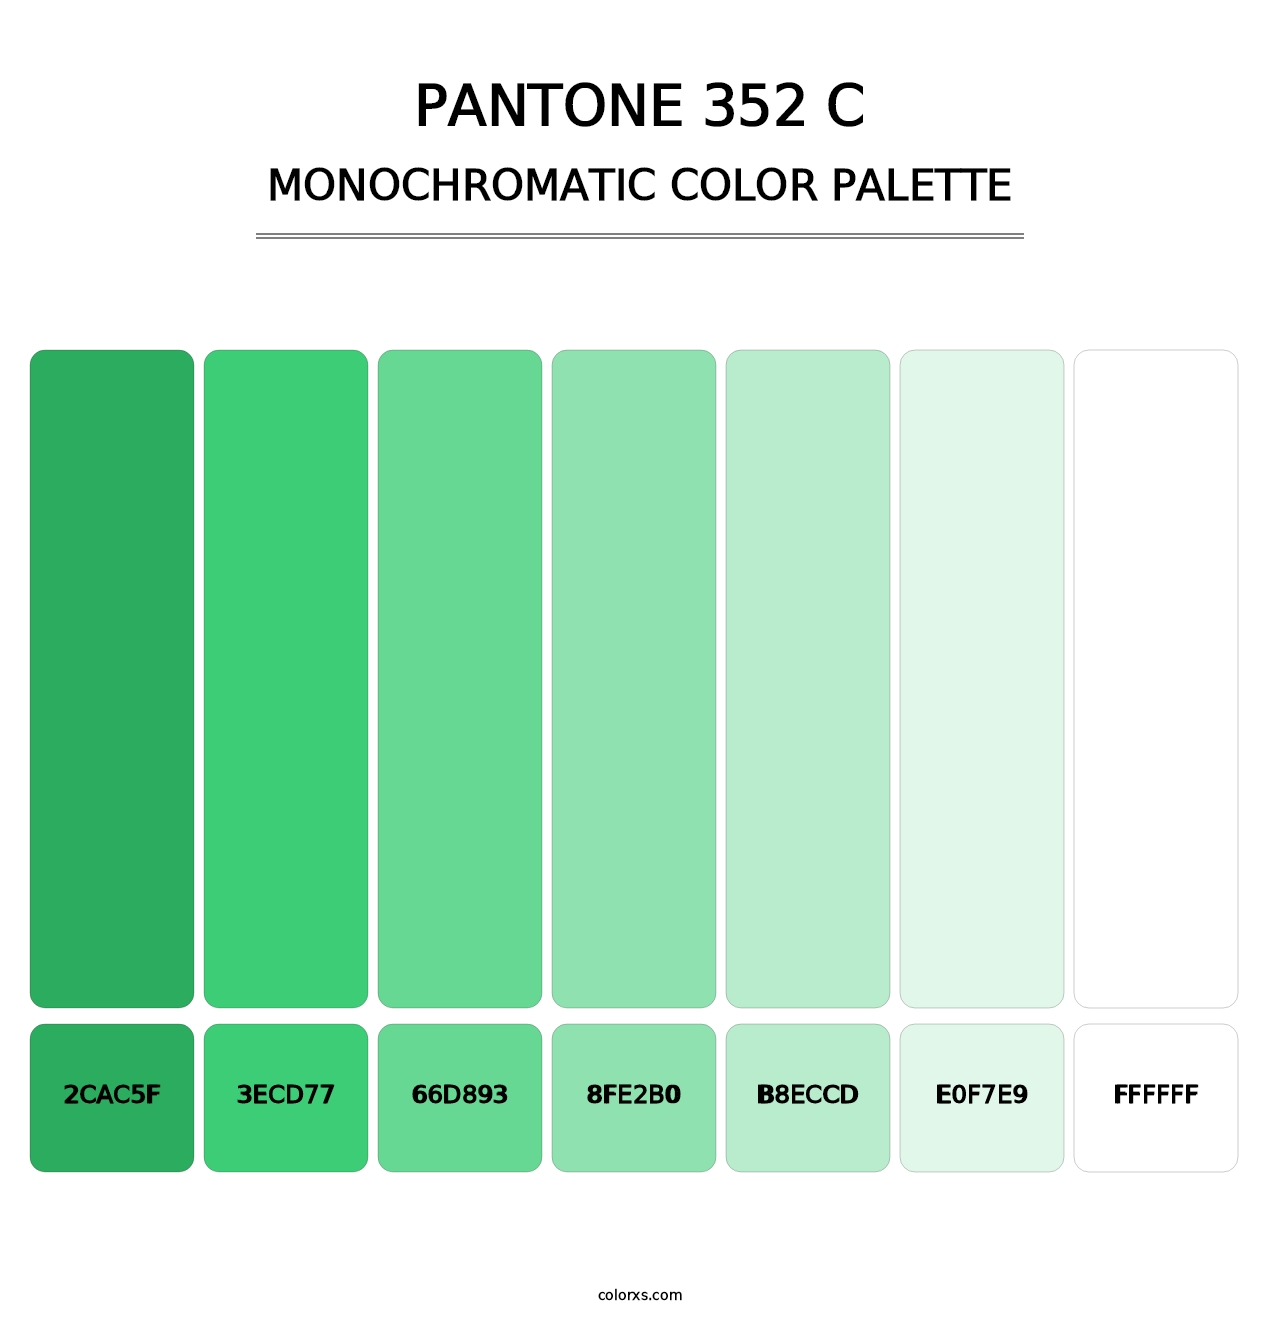 PANTONE 352 C - Monochromatic Color Palette